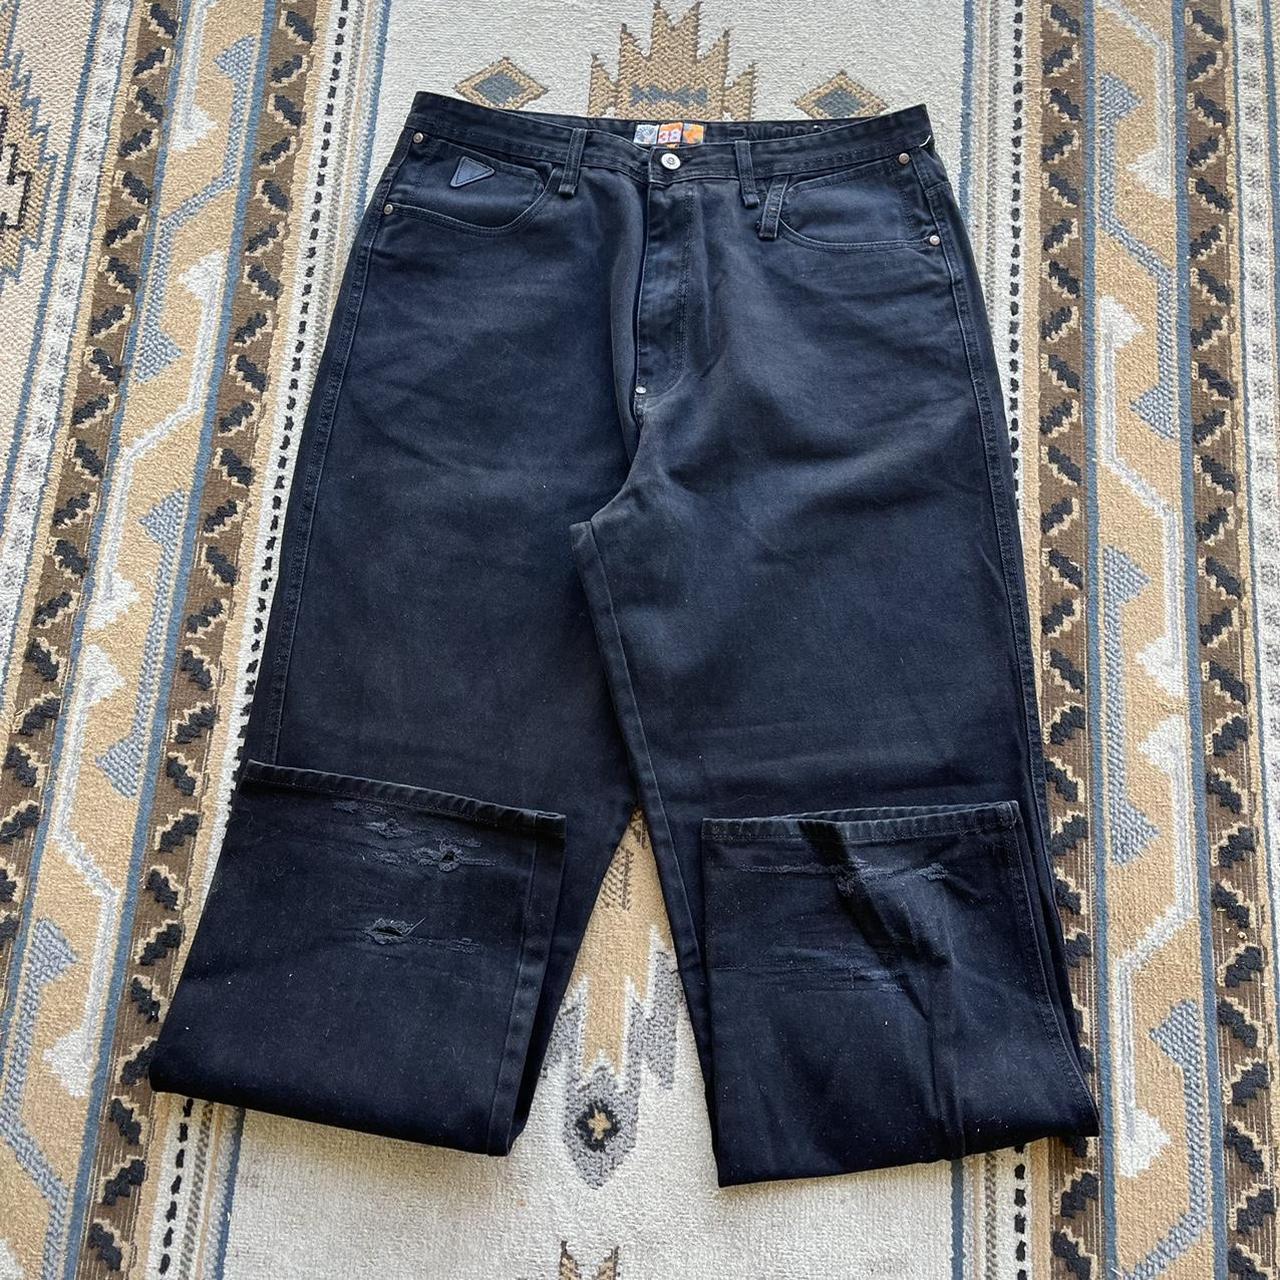 Vintage Akademiks Baggy Fit Black Denim Jeans... - Depop